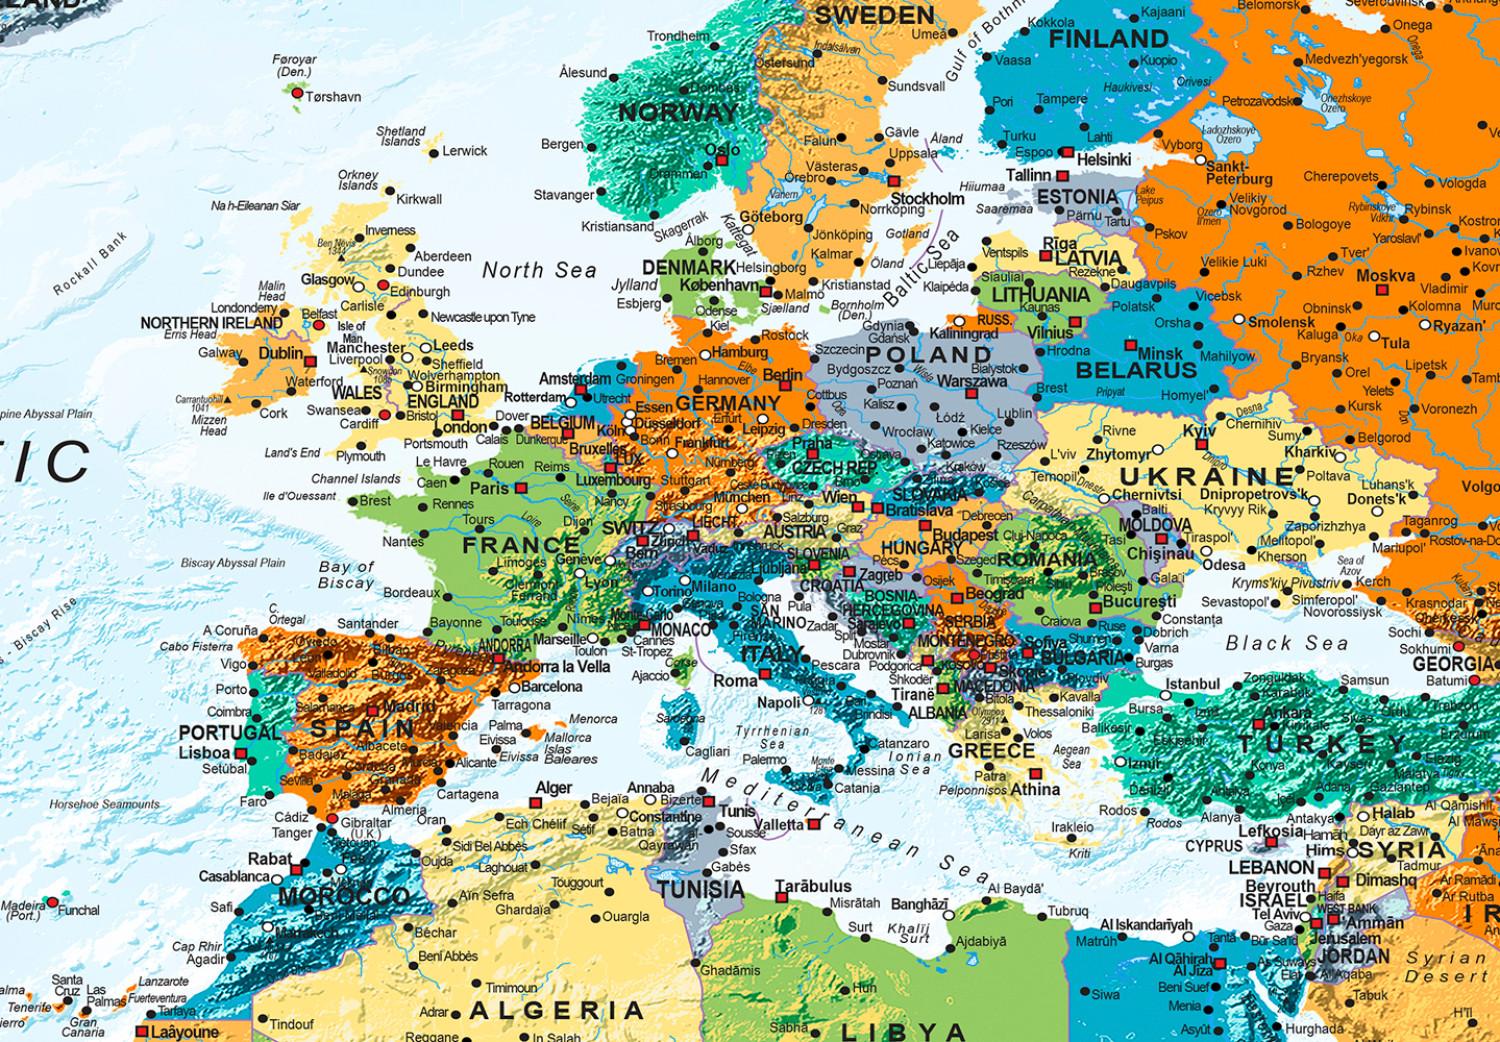 Cuadro decorativo Mapa del mundo (5 piezas) - siete continentes en color